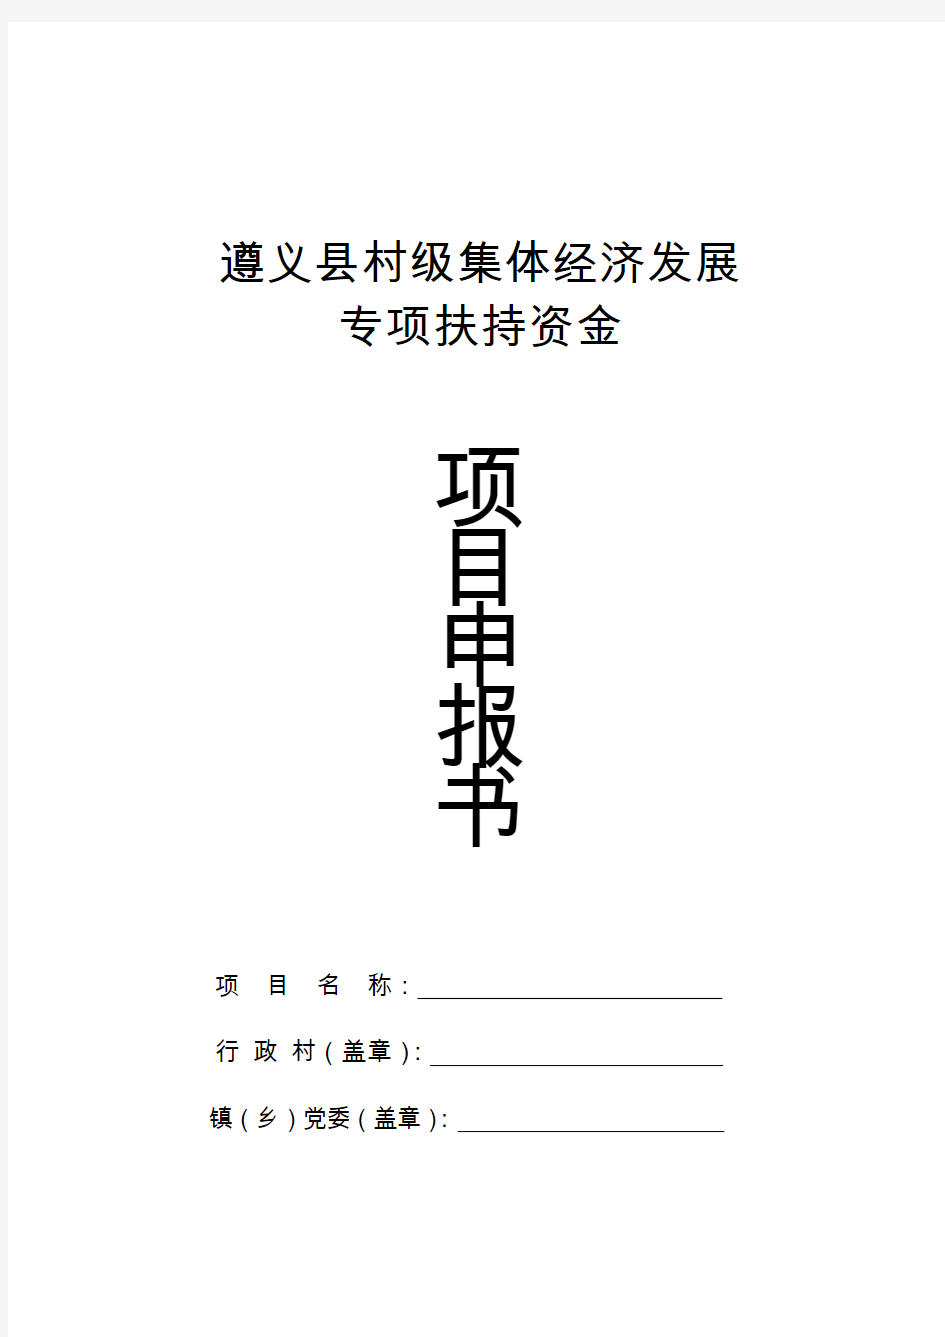 遵义县村级集体经济发展项目申报书(定)